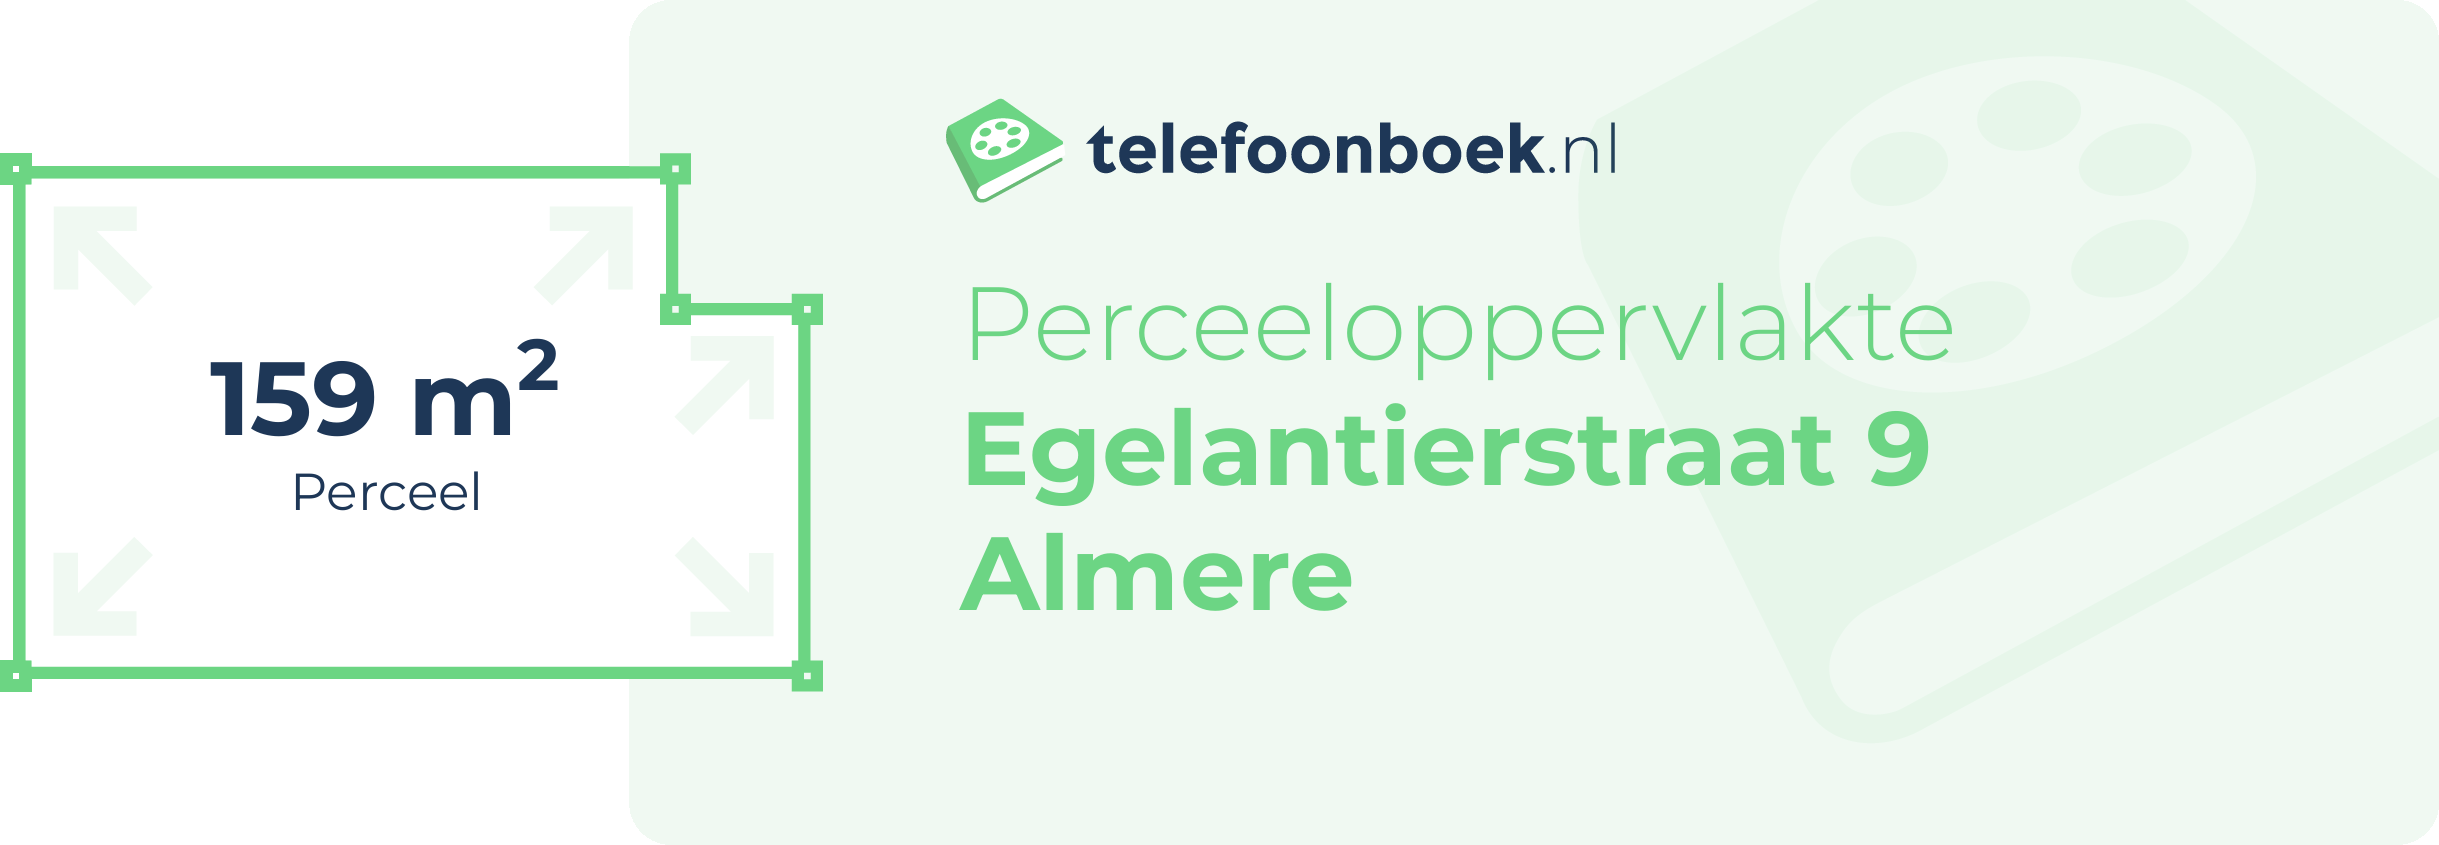 Perceeloppervlakte Egelantierstraat 9 Almere